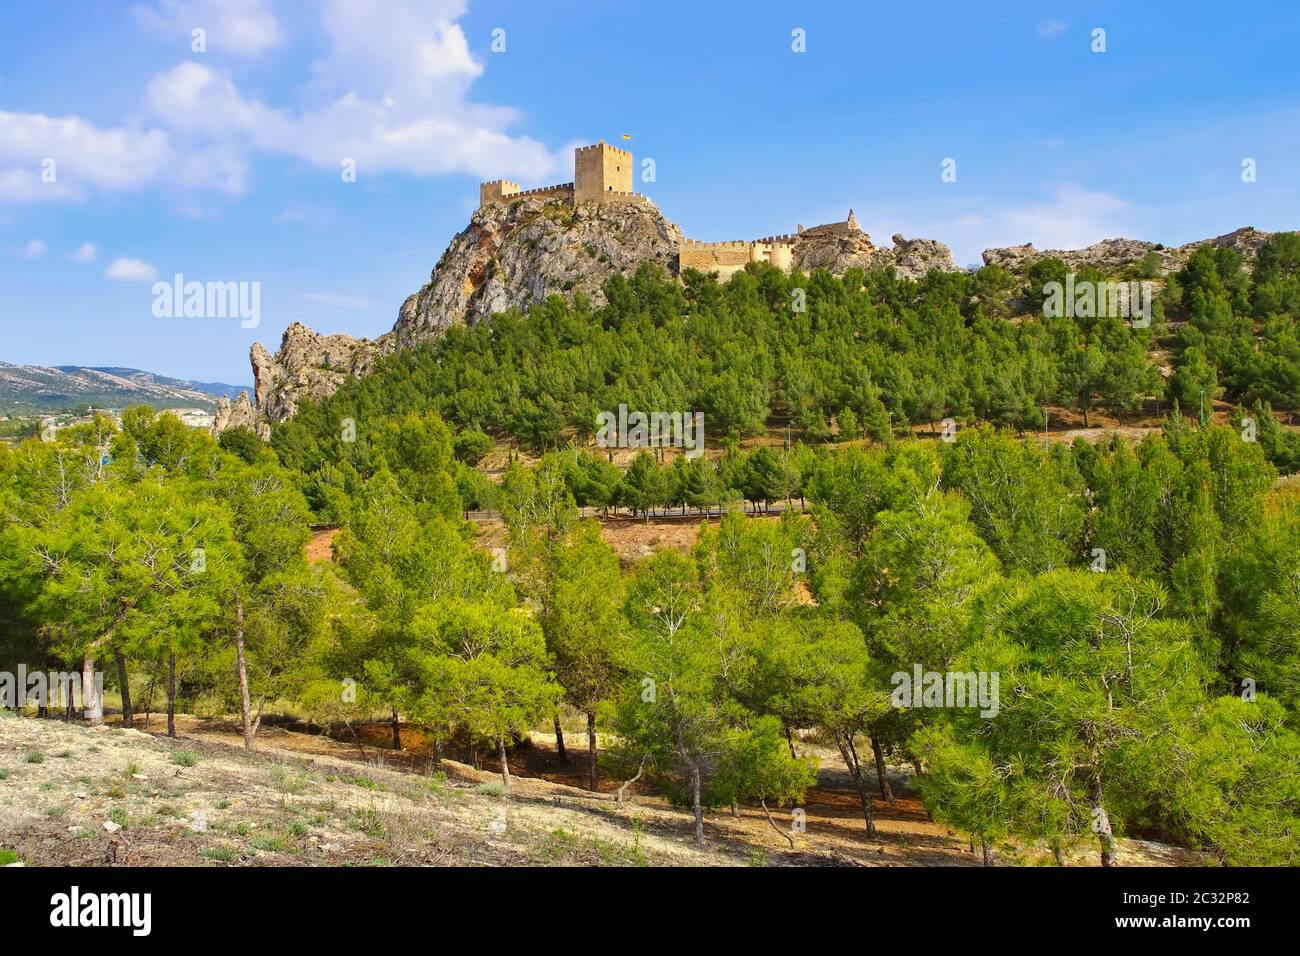 Sax, Castillo de Sax, castle in Province of Alicante, Spain Stock Photo